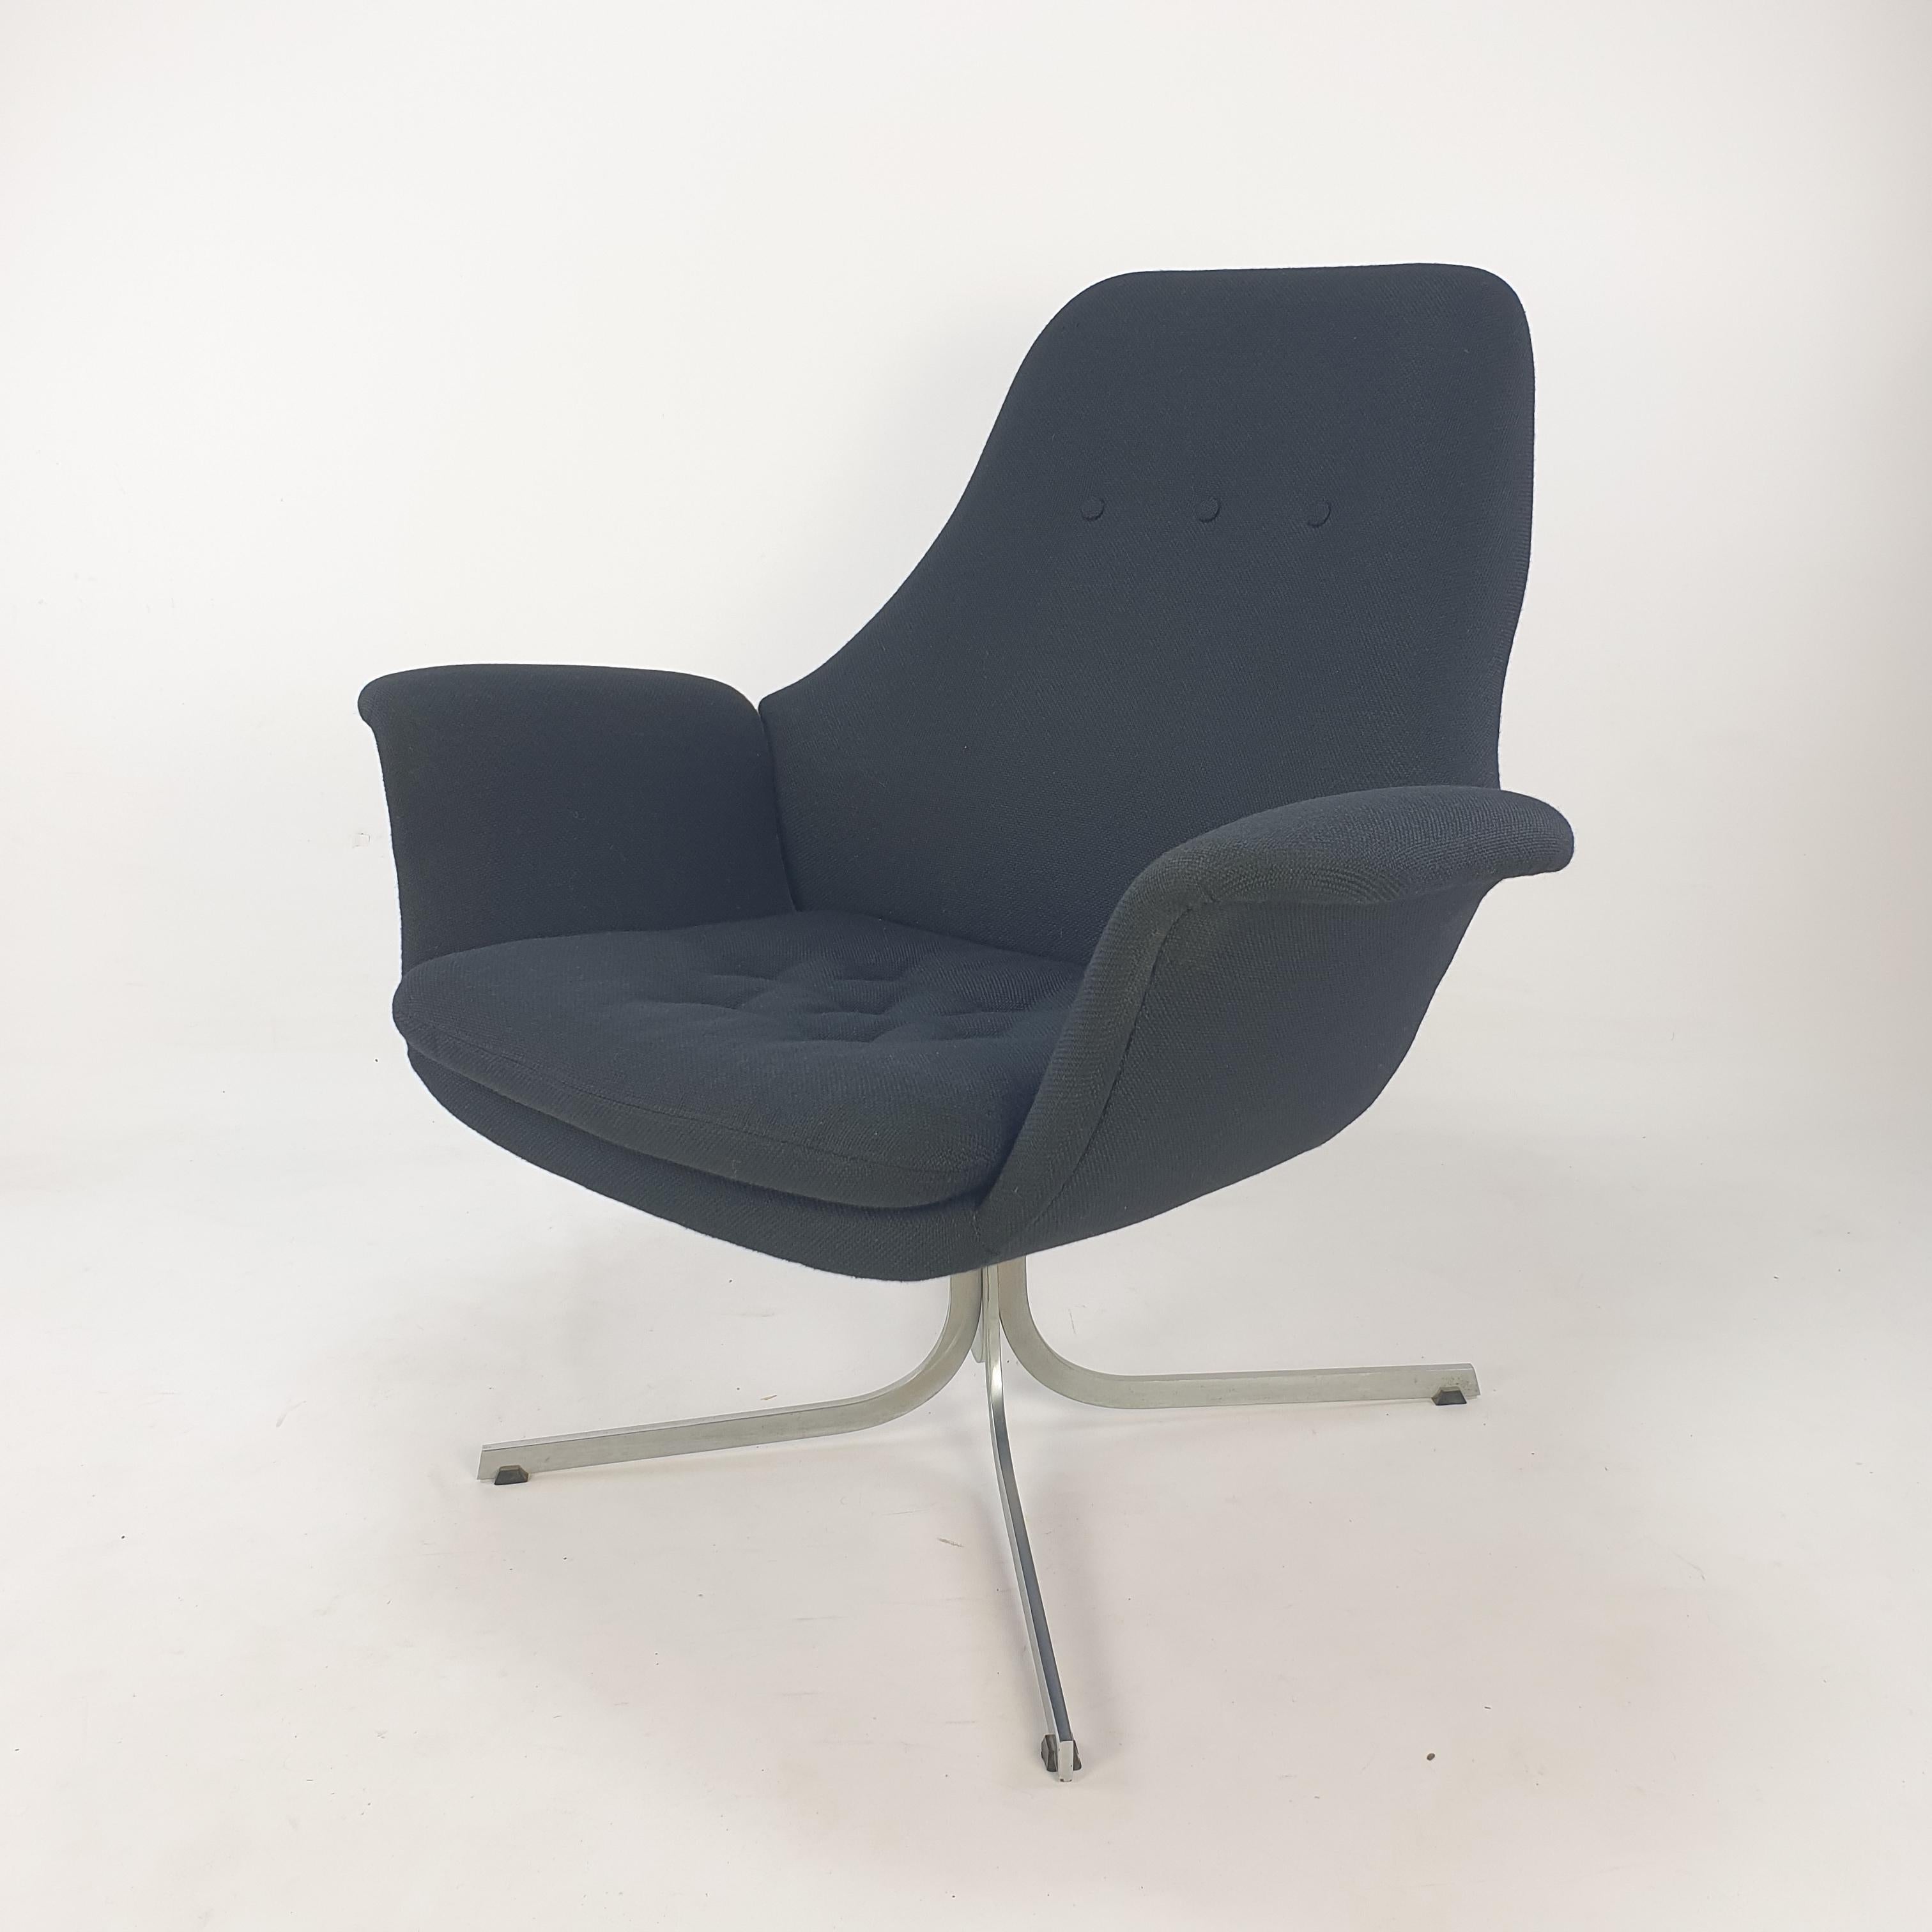 Äußerst seltener Big Tulip Lounge Chair, entworfen von Pierre Paulin für Artifort in den 1960er Jahren. 
Dieser bequeme Stuhl ist ein nicht alltägliches, aber originales Modell von Pierre Paulin. 

Er wurde vor einigen Jahren mit einem hochwertigen